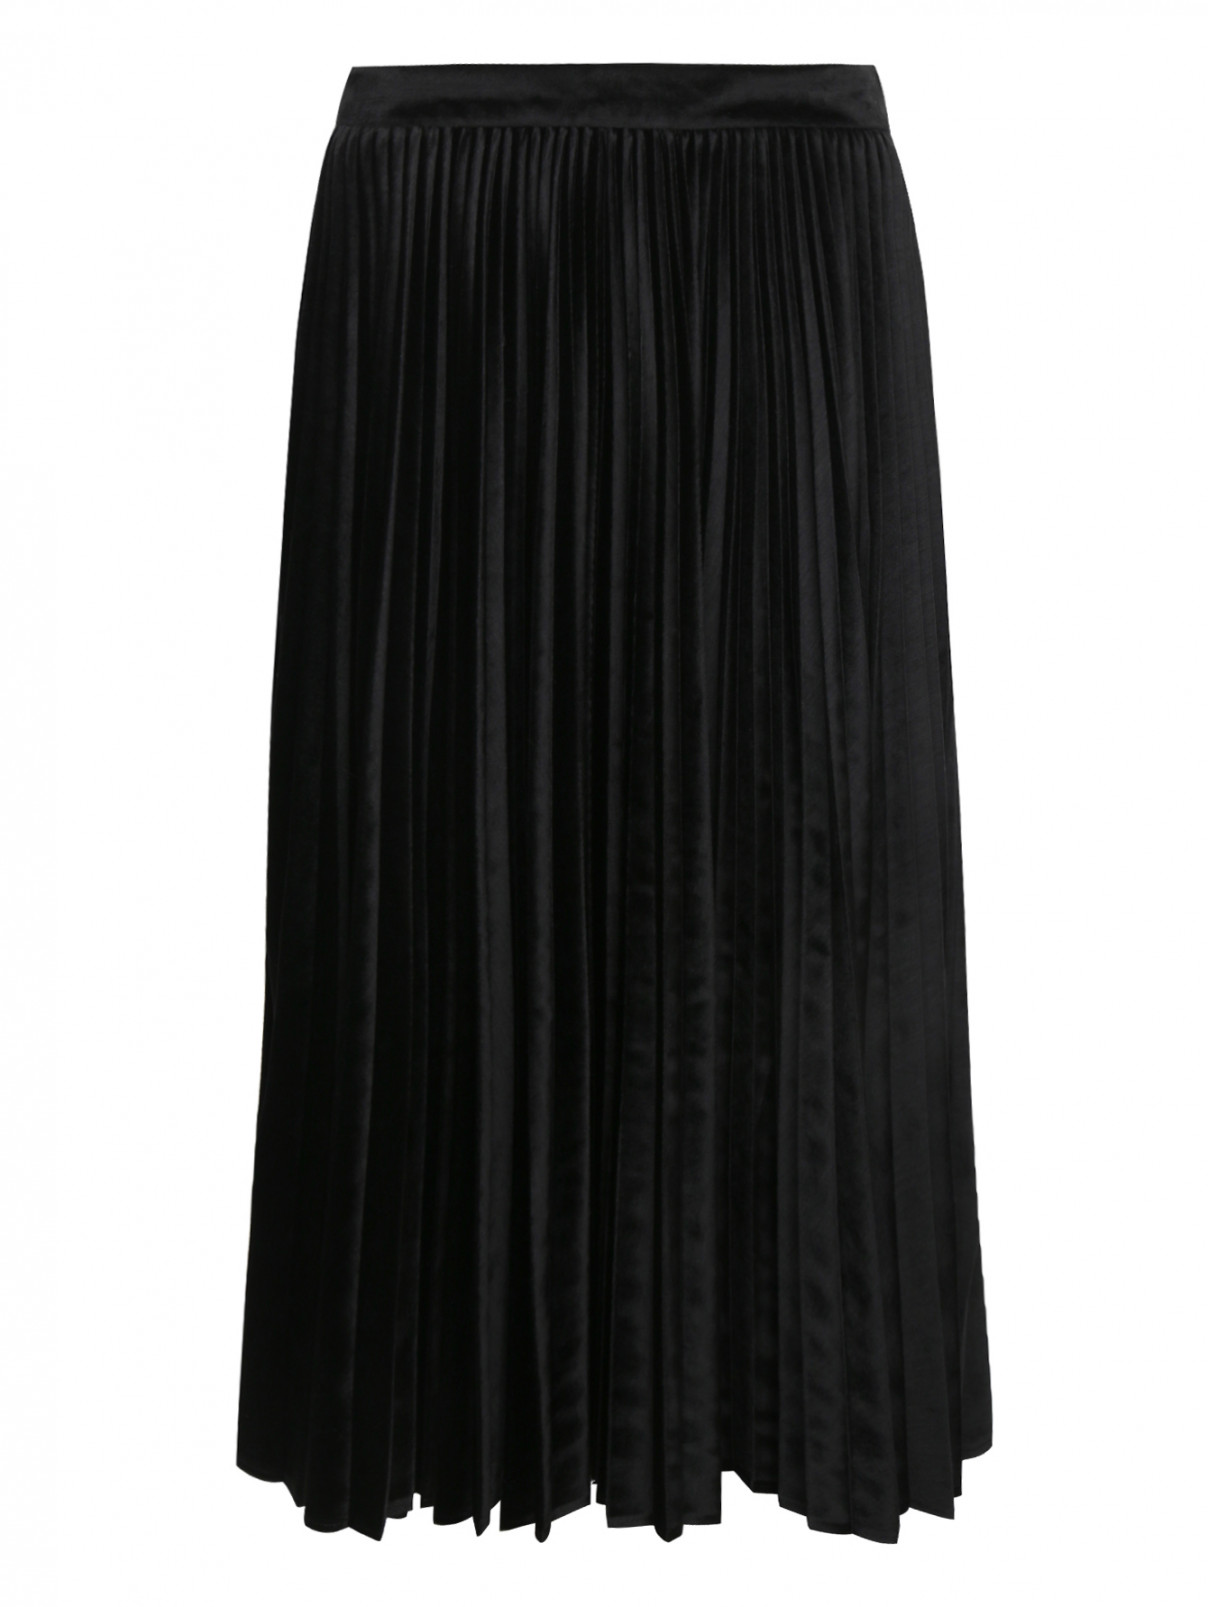 Бархатная юбка-плиссе Rossella Jardini  –  Общий вид  – Цвет:  Черный